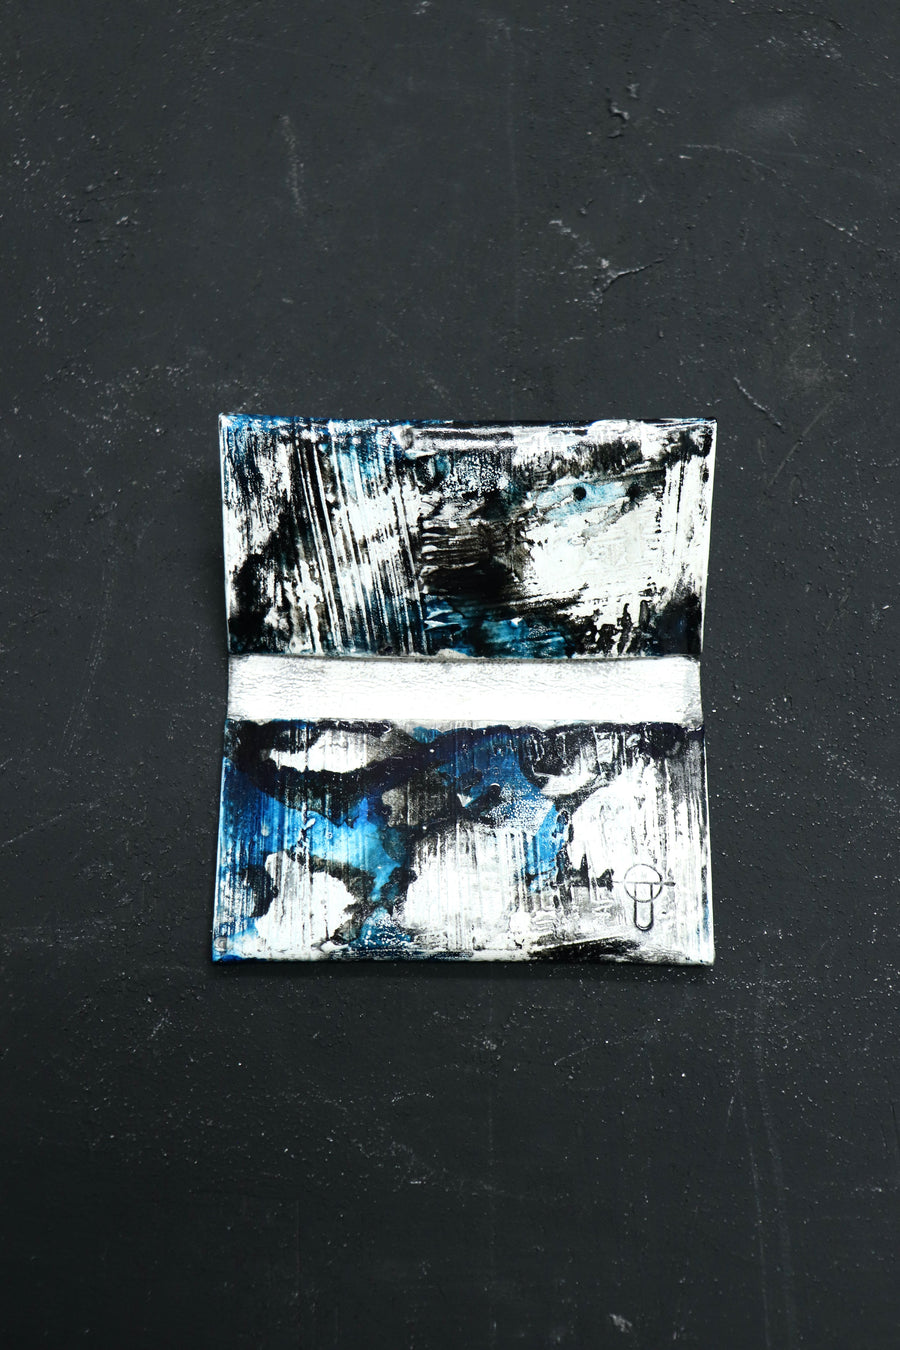 カガリユウスケ(KAGARI YUSUKE)の都市型迷彩カードケース(青)の通販